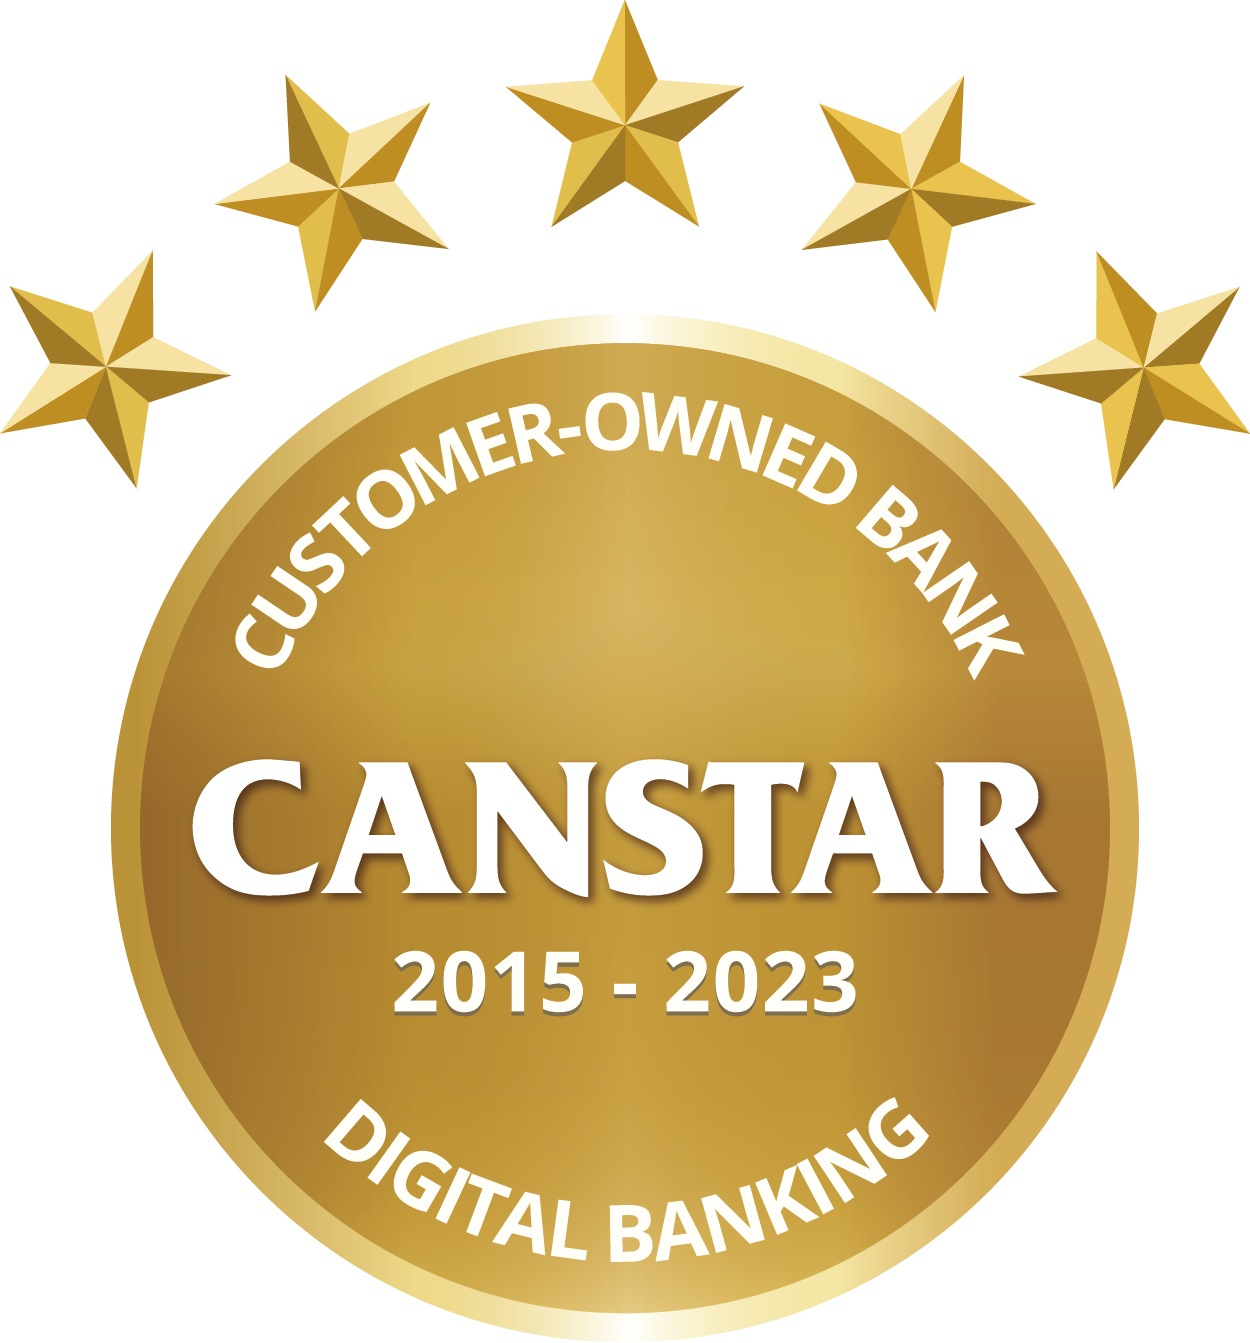 Customer Owned Bank of the Year - Digital Banking Award 2015-20122